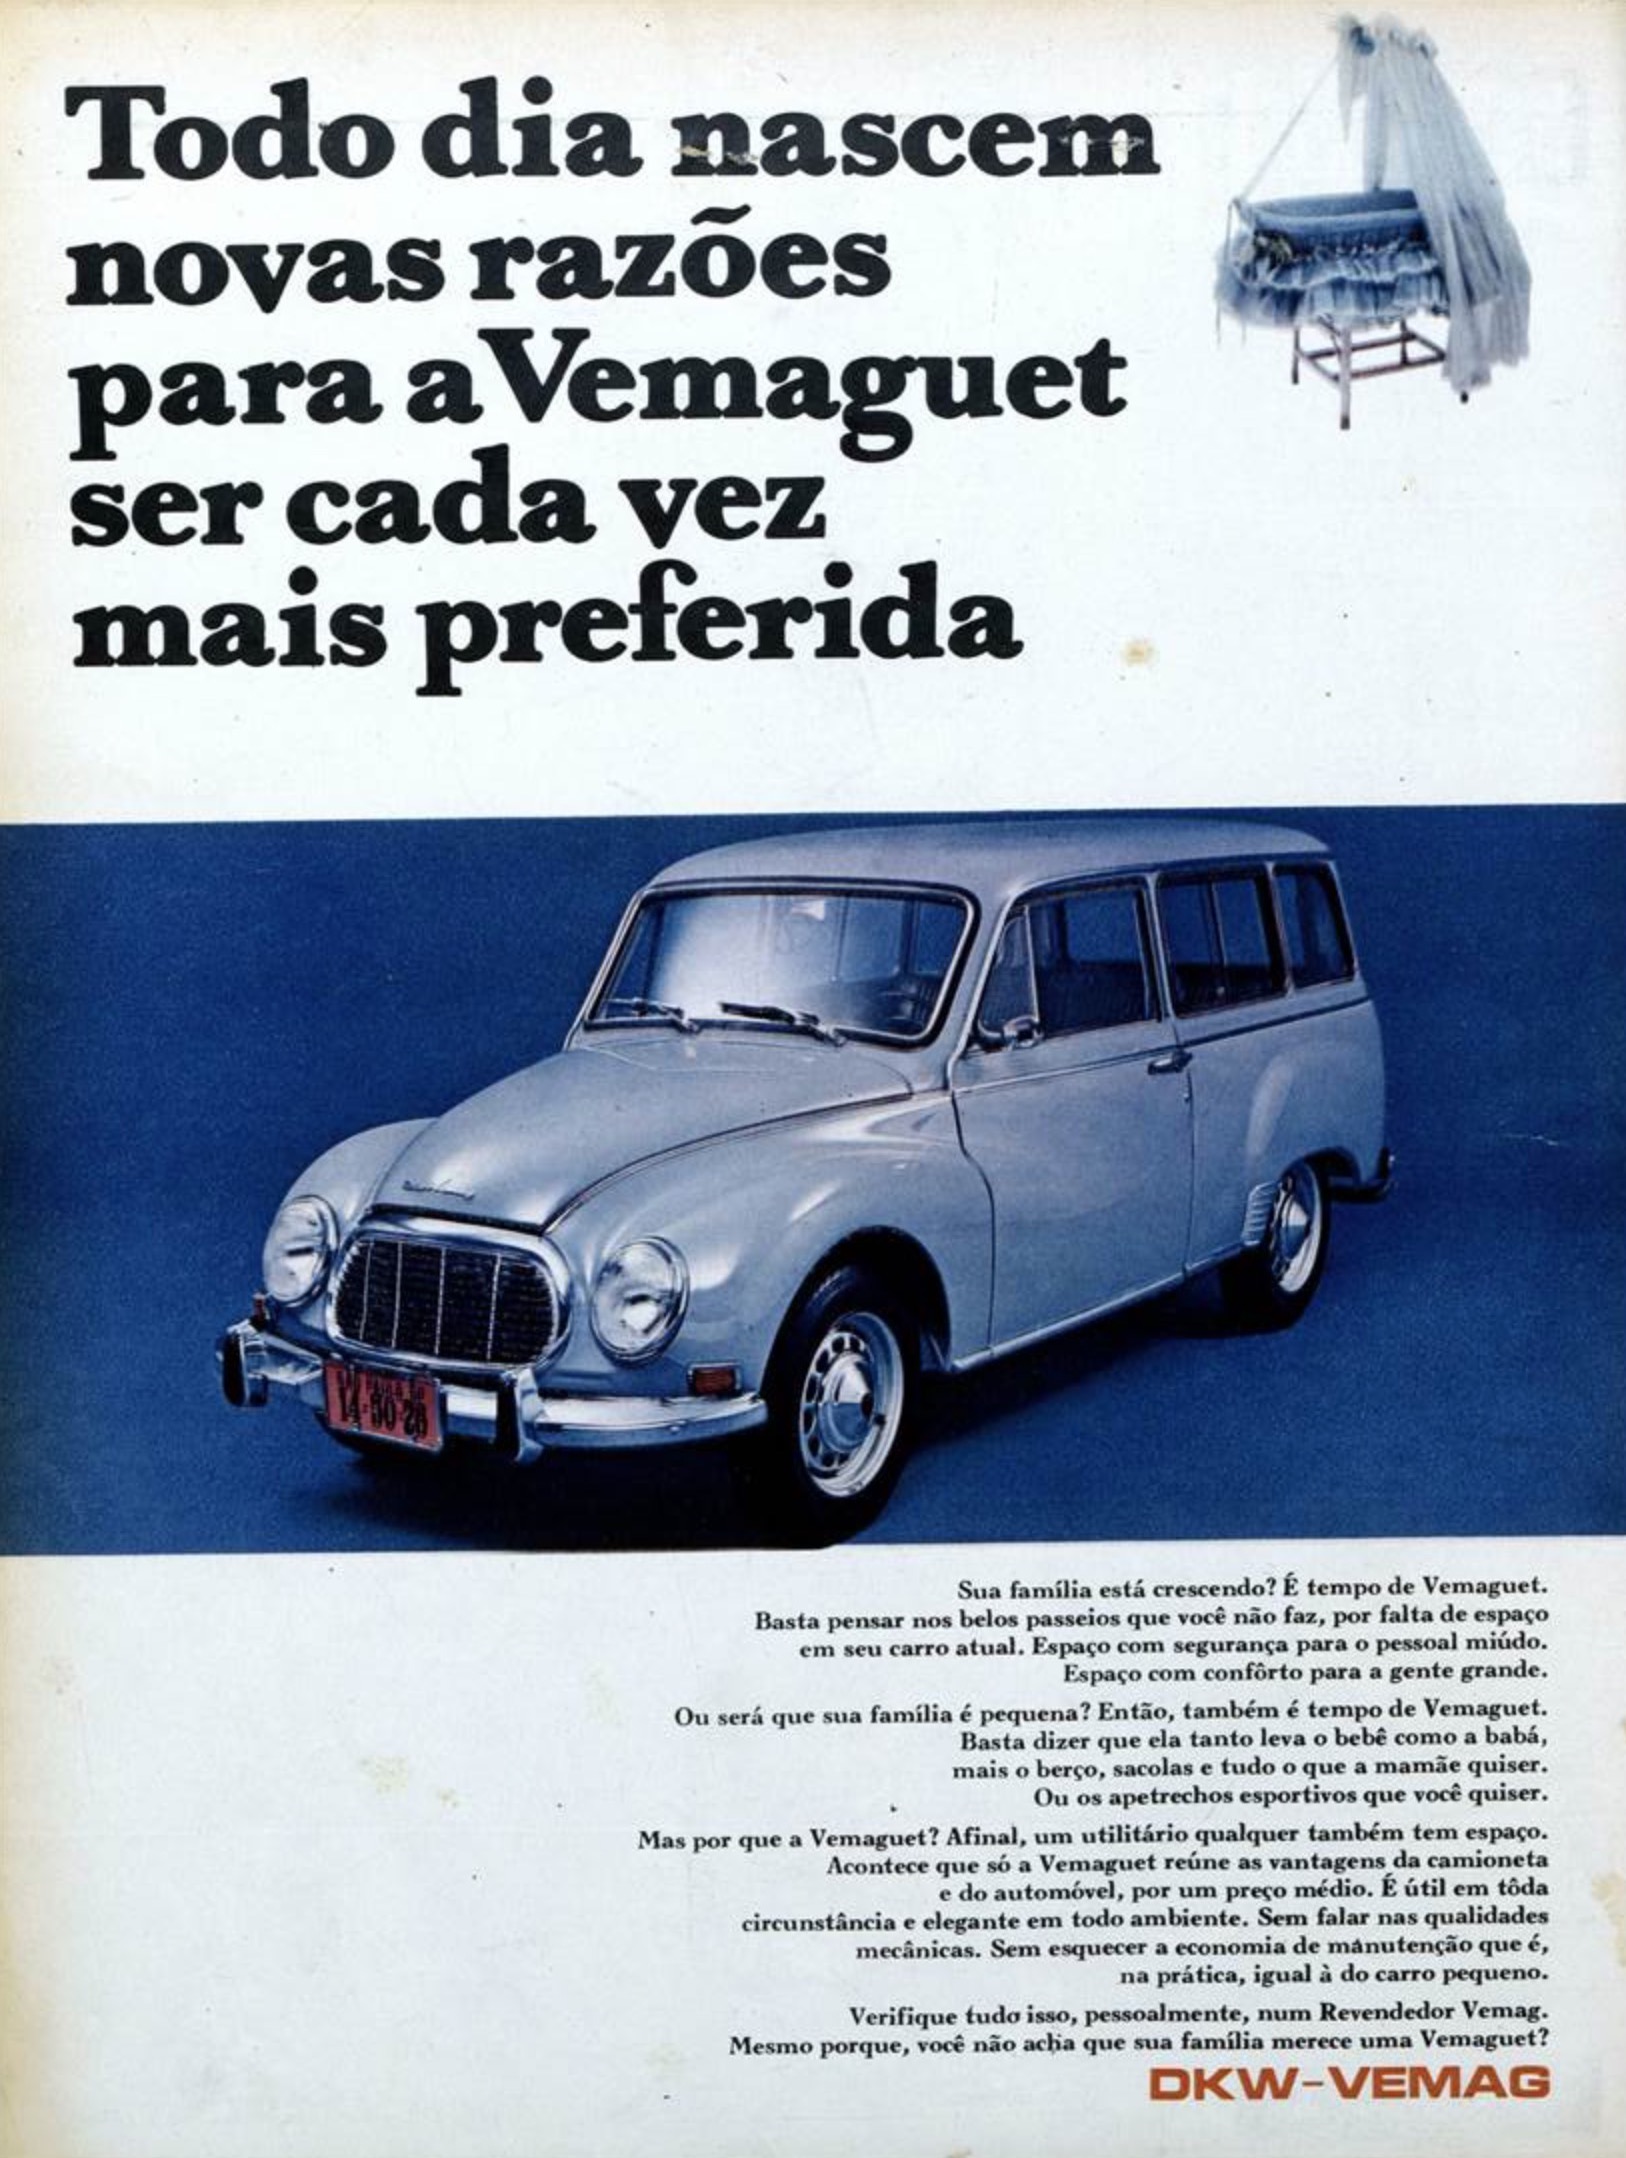 Propaganda da Vemag apresentando as vantagens da Vemaguet para uma família